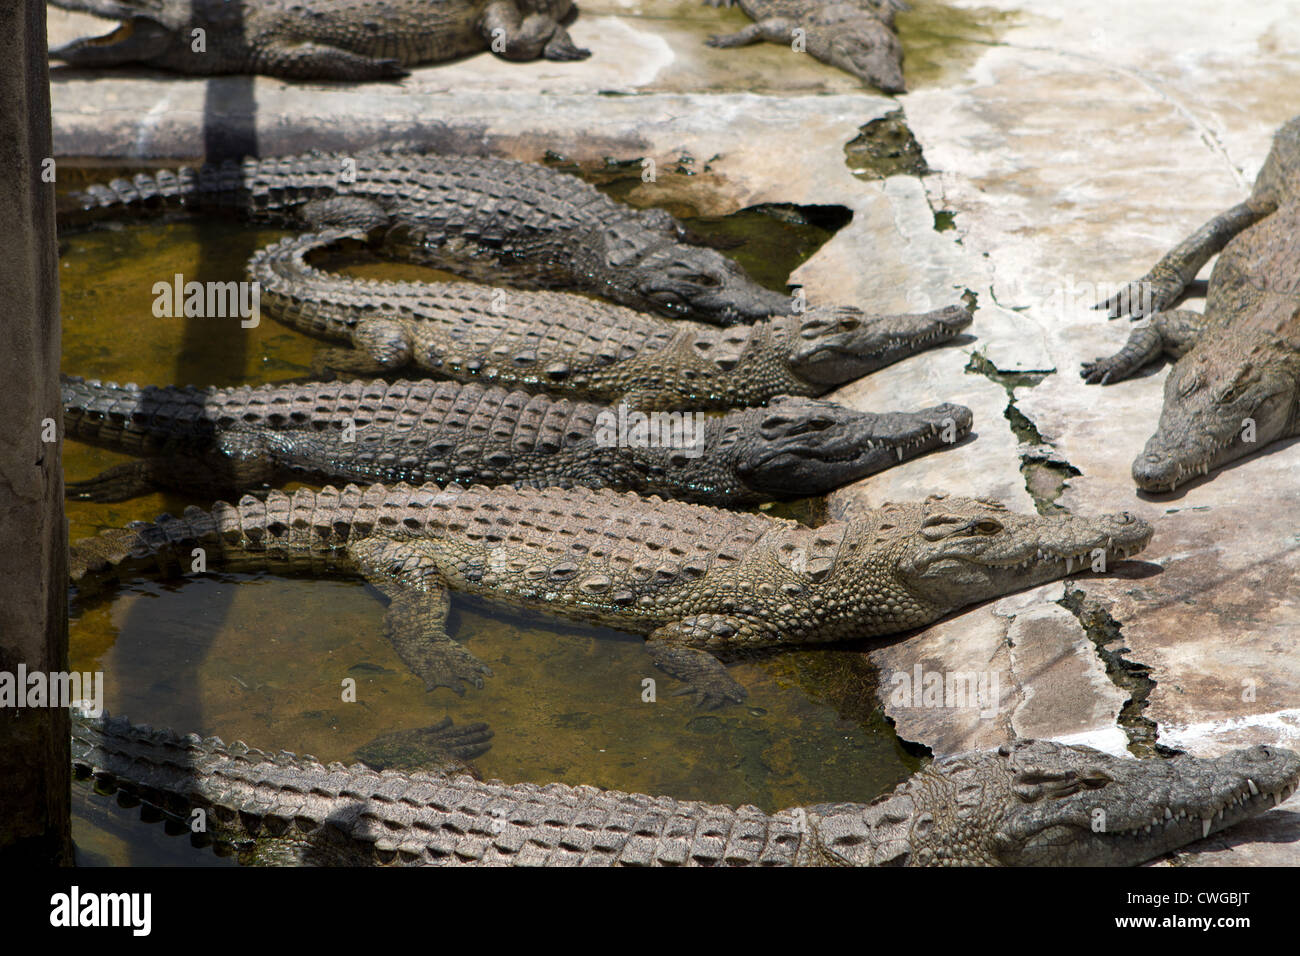 El cocodrilo del Nilo (Crocodylus niloticus) en la granja de cocodrilos, Bagamoyo, Tanzania Foto de stock